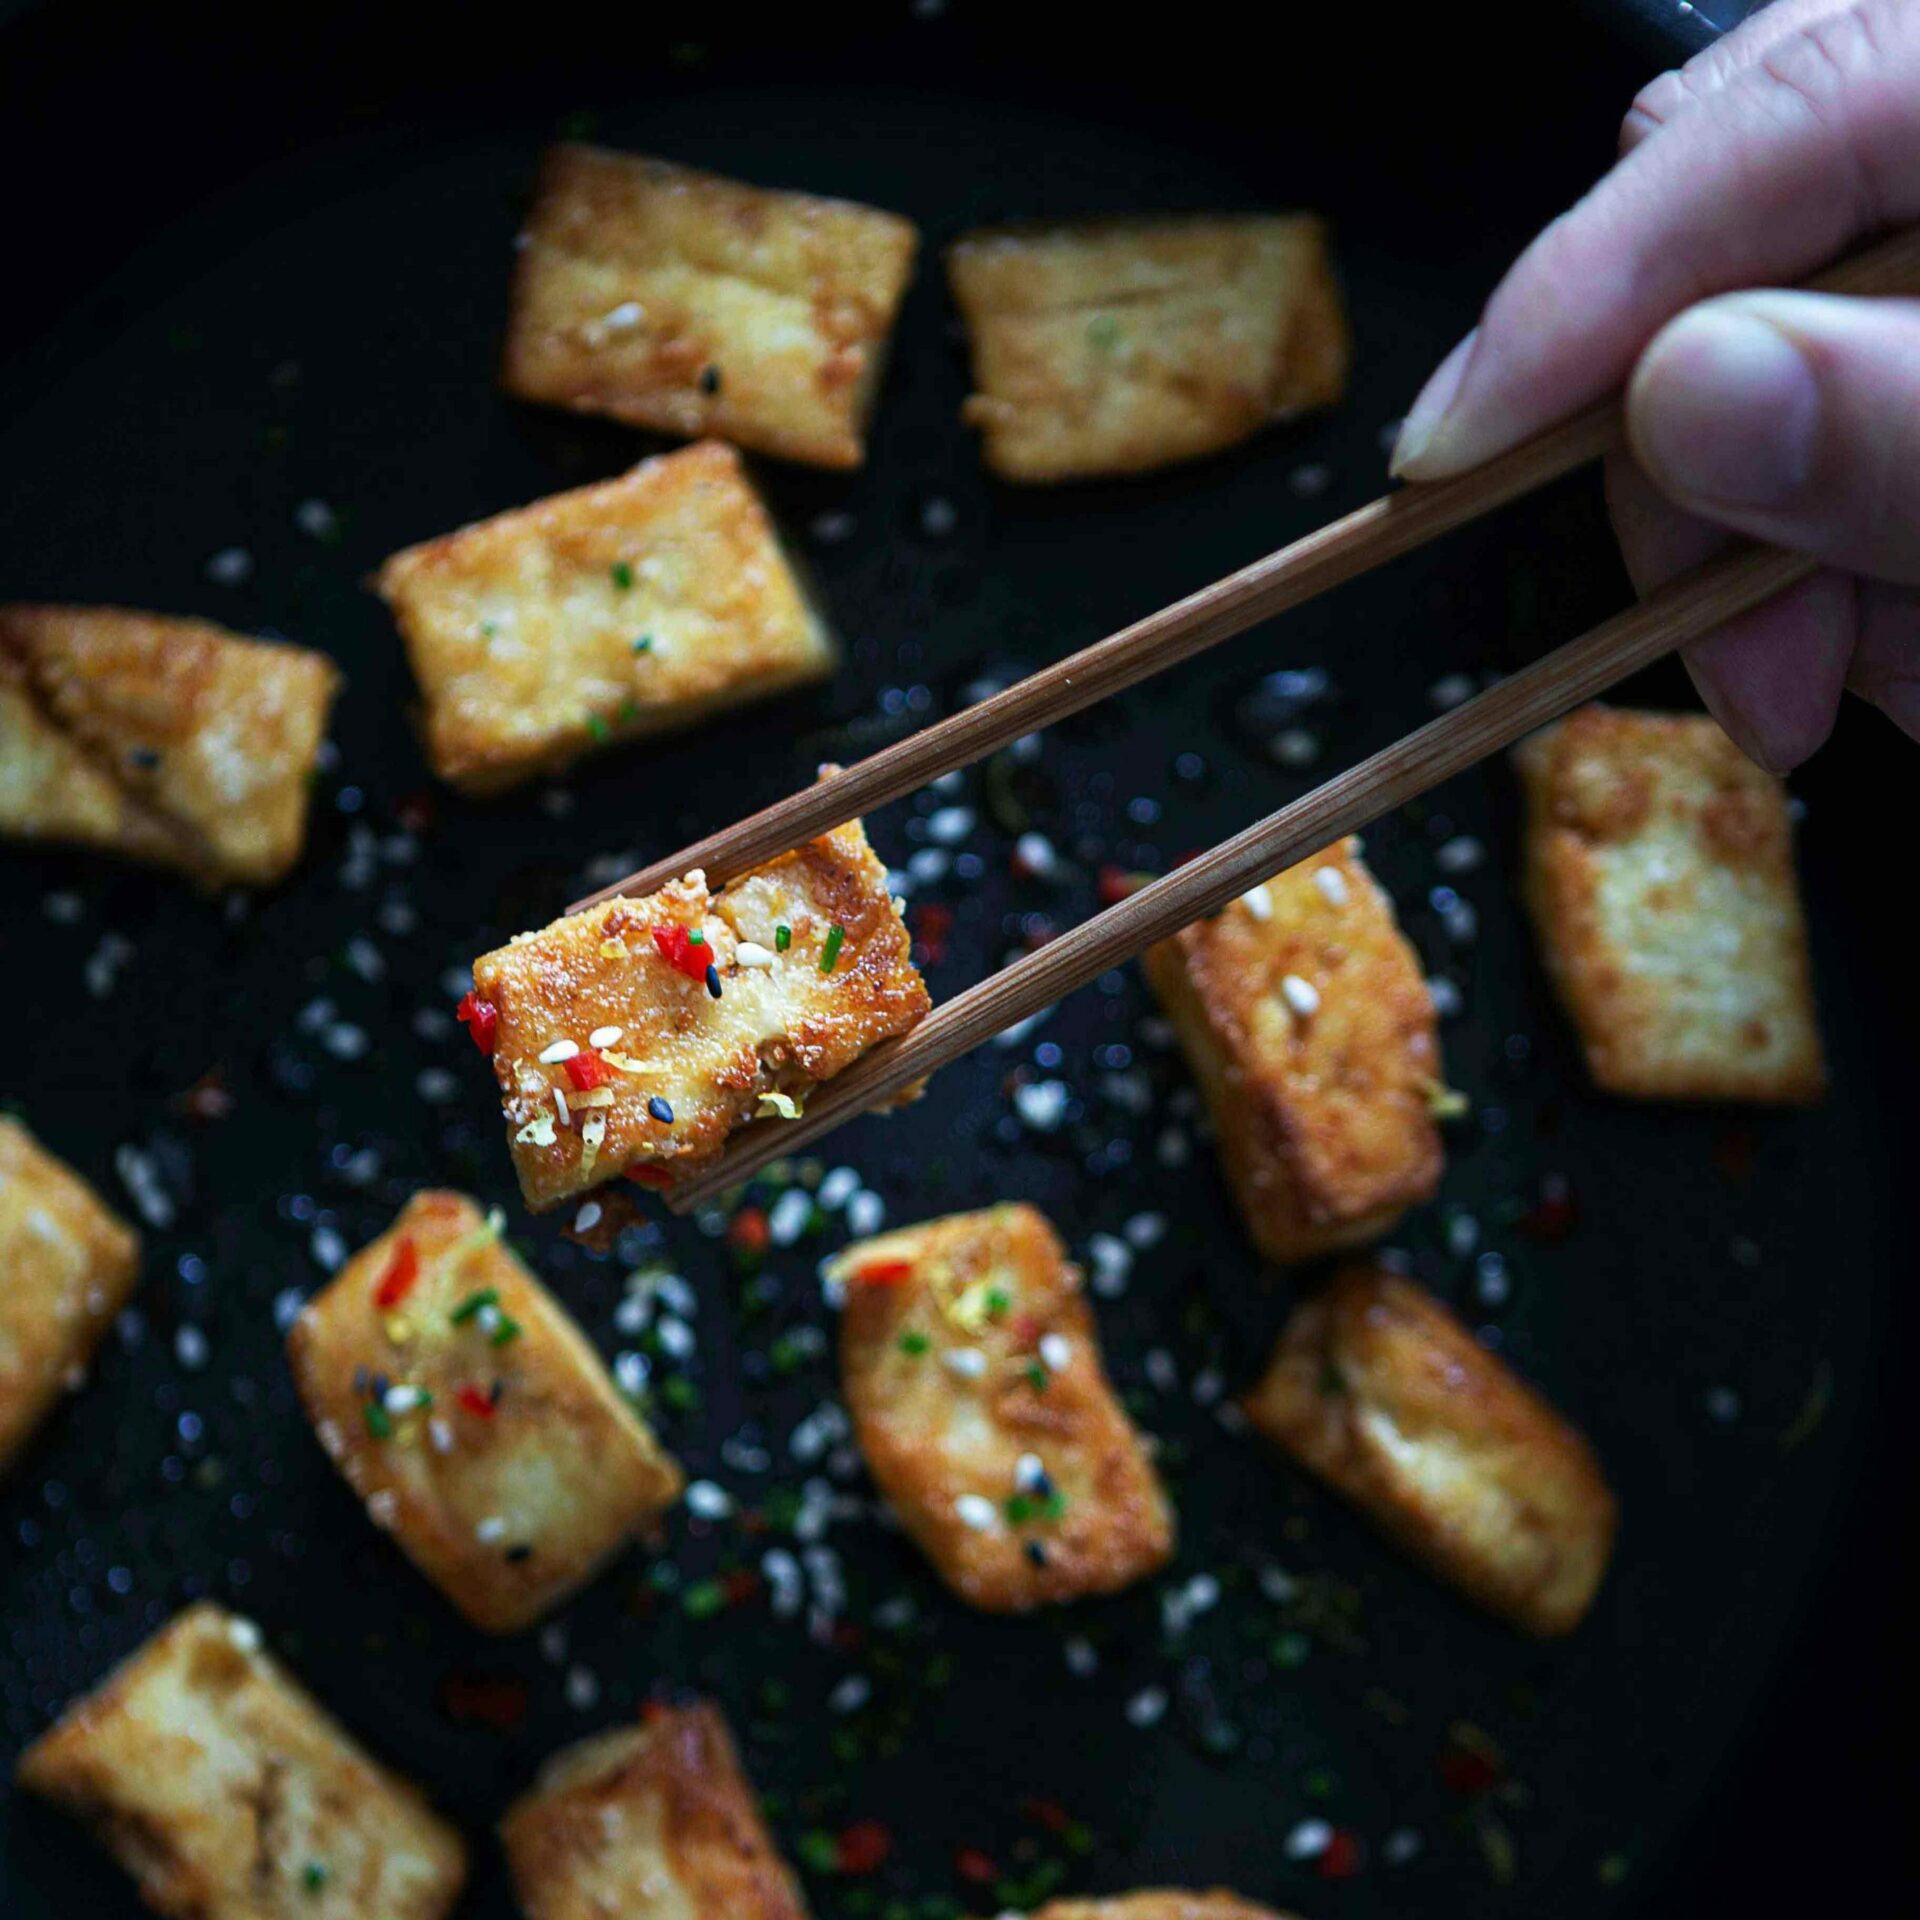 Tofun marinointi ja paistaminen rapeaksi.